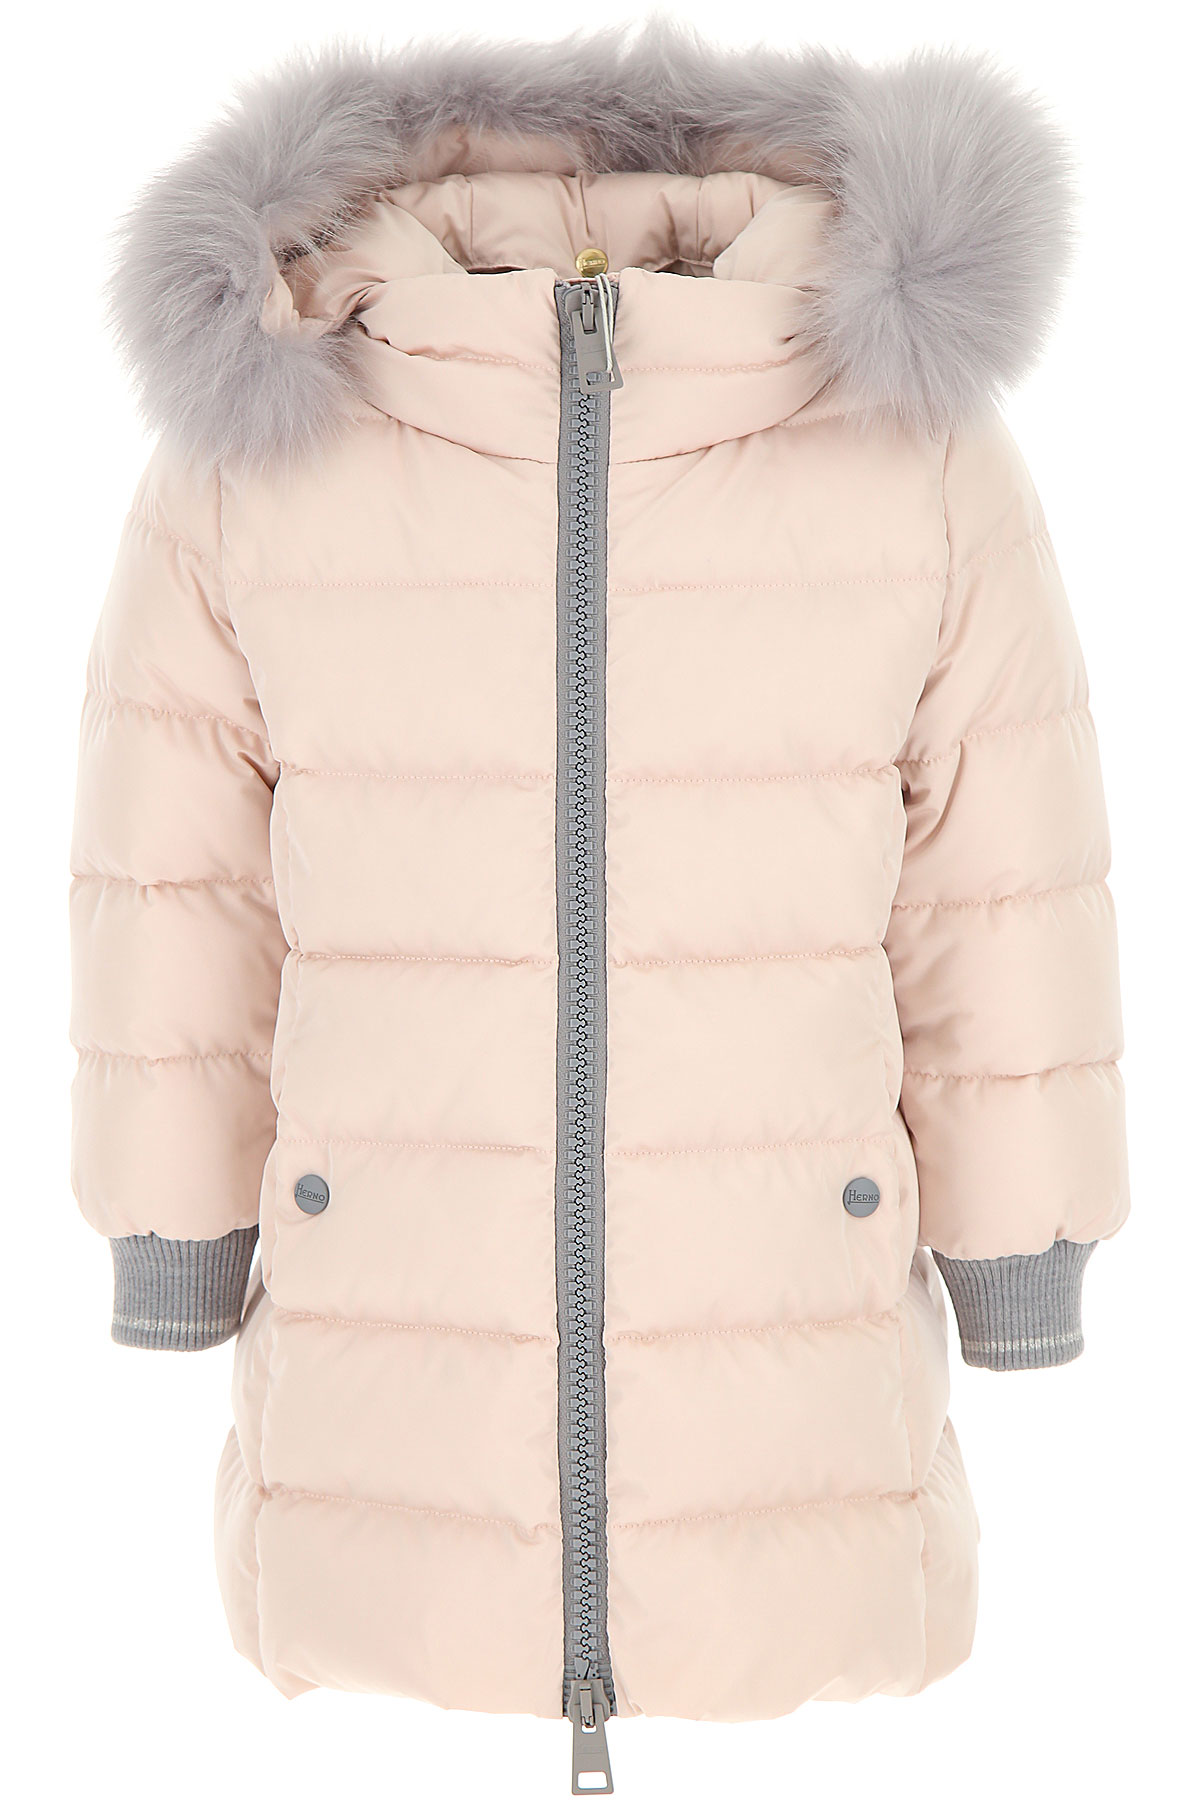 Herno Kinder Daunen Jacke für Mädchen, Soft Shell Ski Jacken Günstig im Sale, Pink, Polyester, 2017, 10Y 12Y 4Y 6Y 8Y